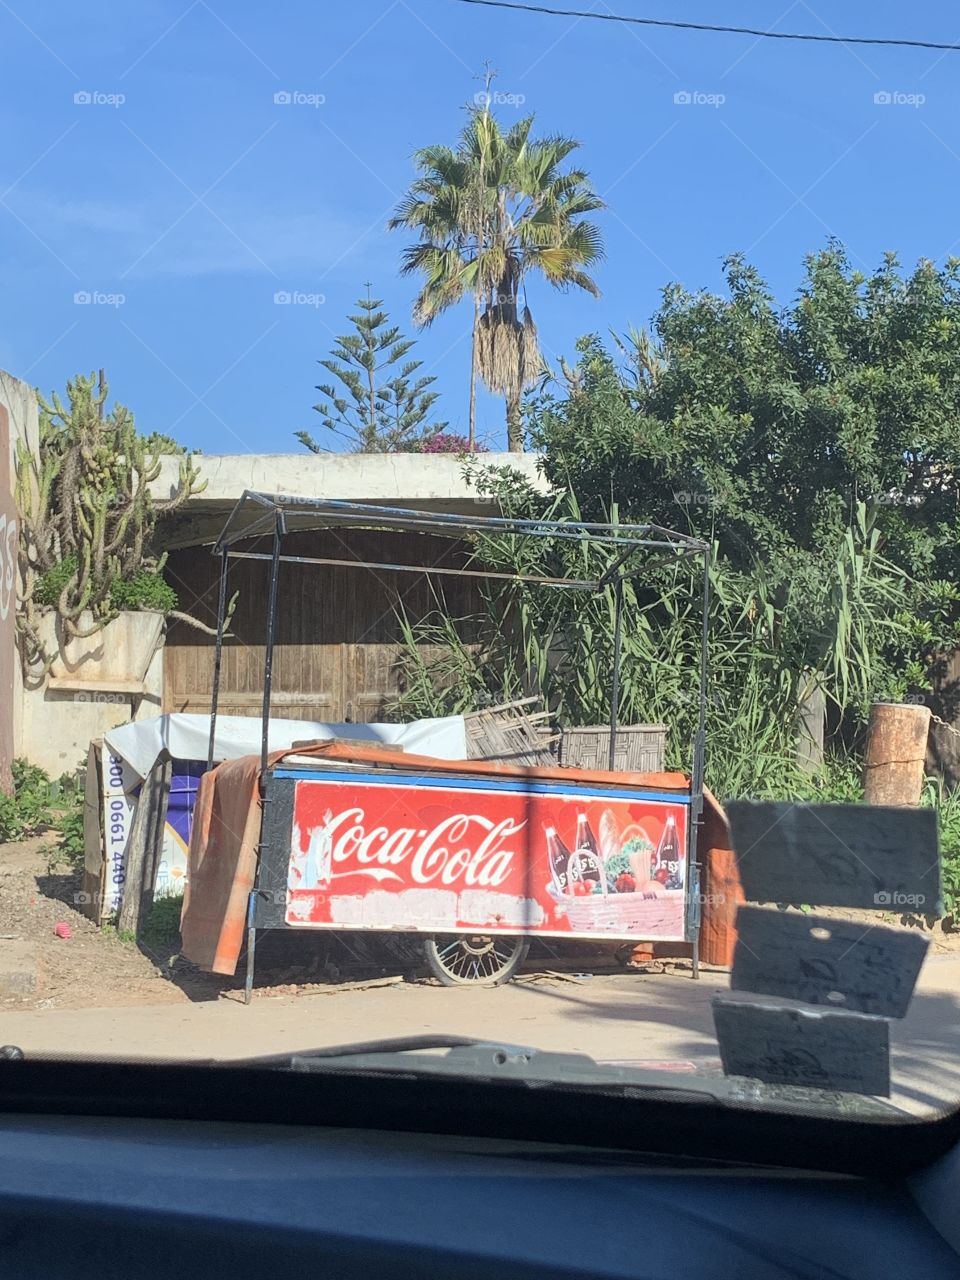 Coke—The international drink